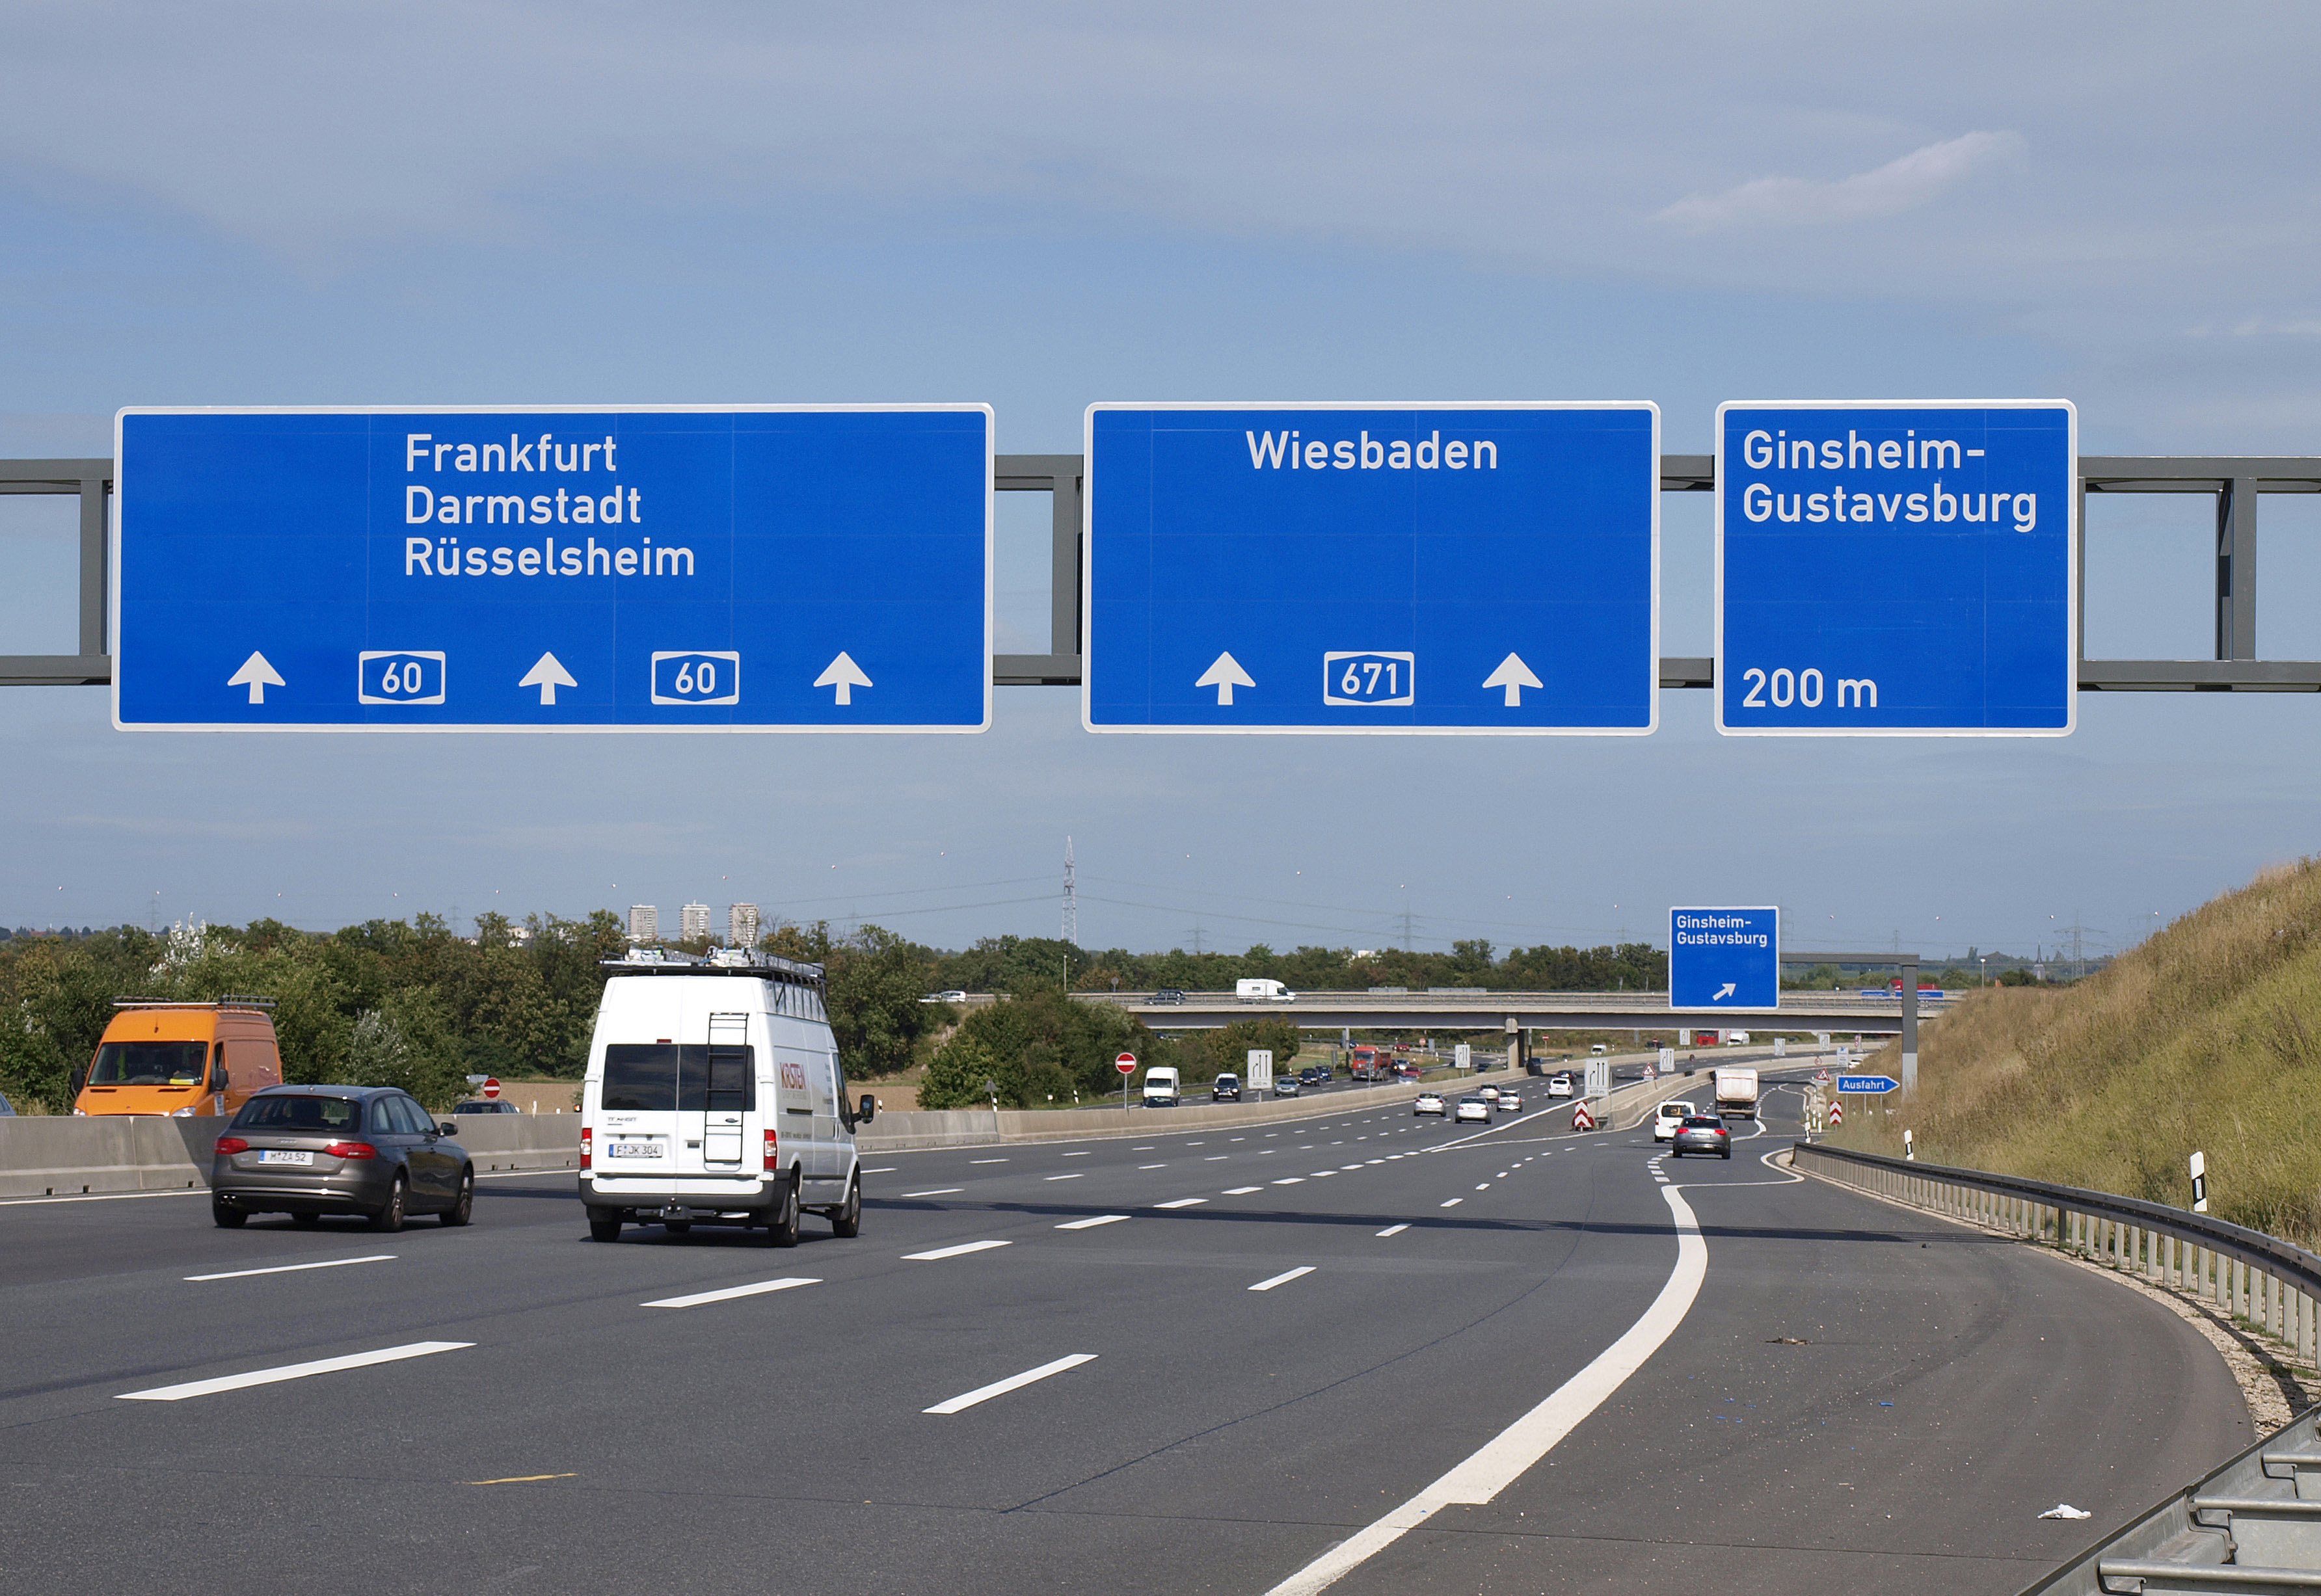 Standort Ginsheim-Gustavsburg mit direktem Autobahnanschluss